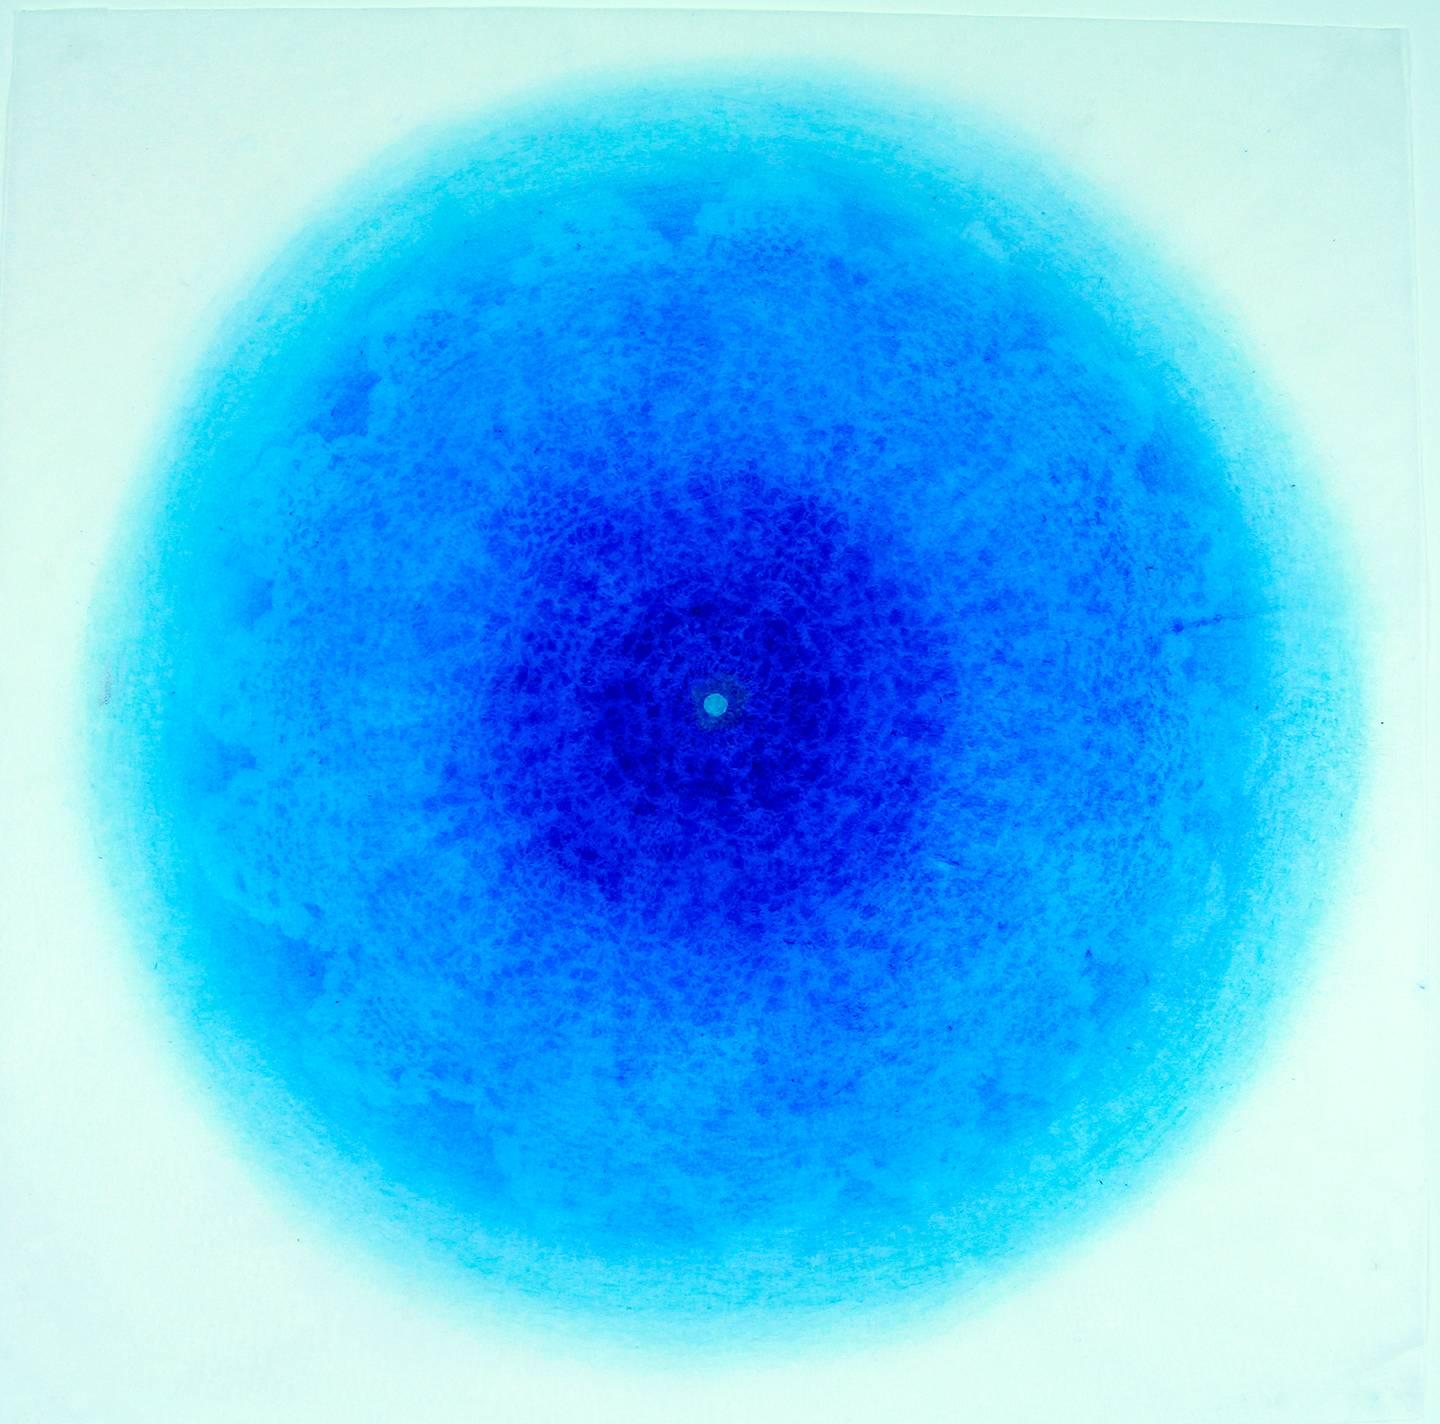 Revolution XXVI - gravure géométrique abstraite délicate et complexe bleue découpée au laser